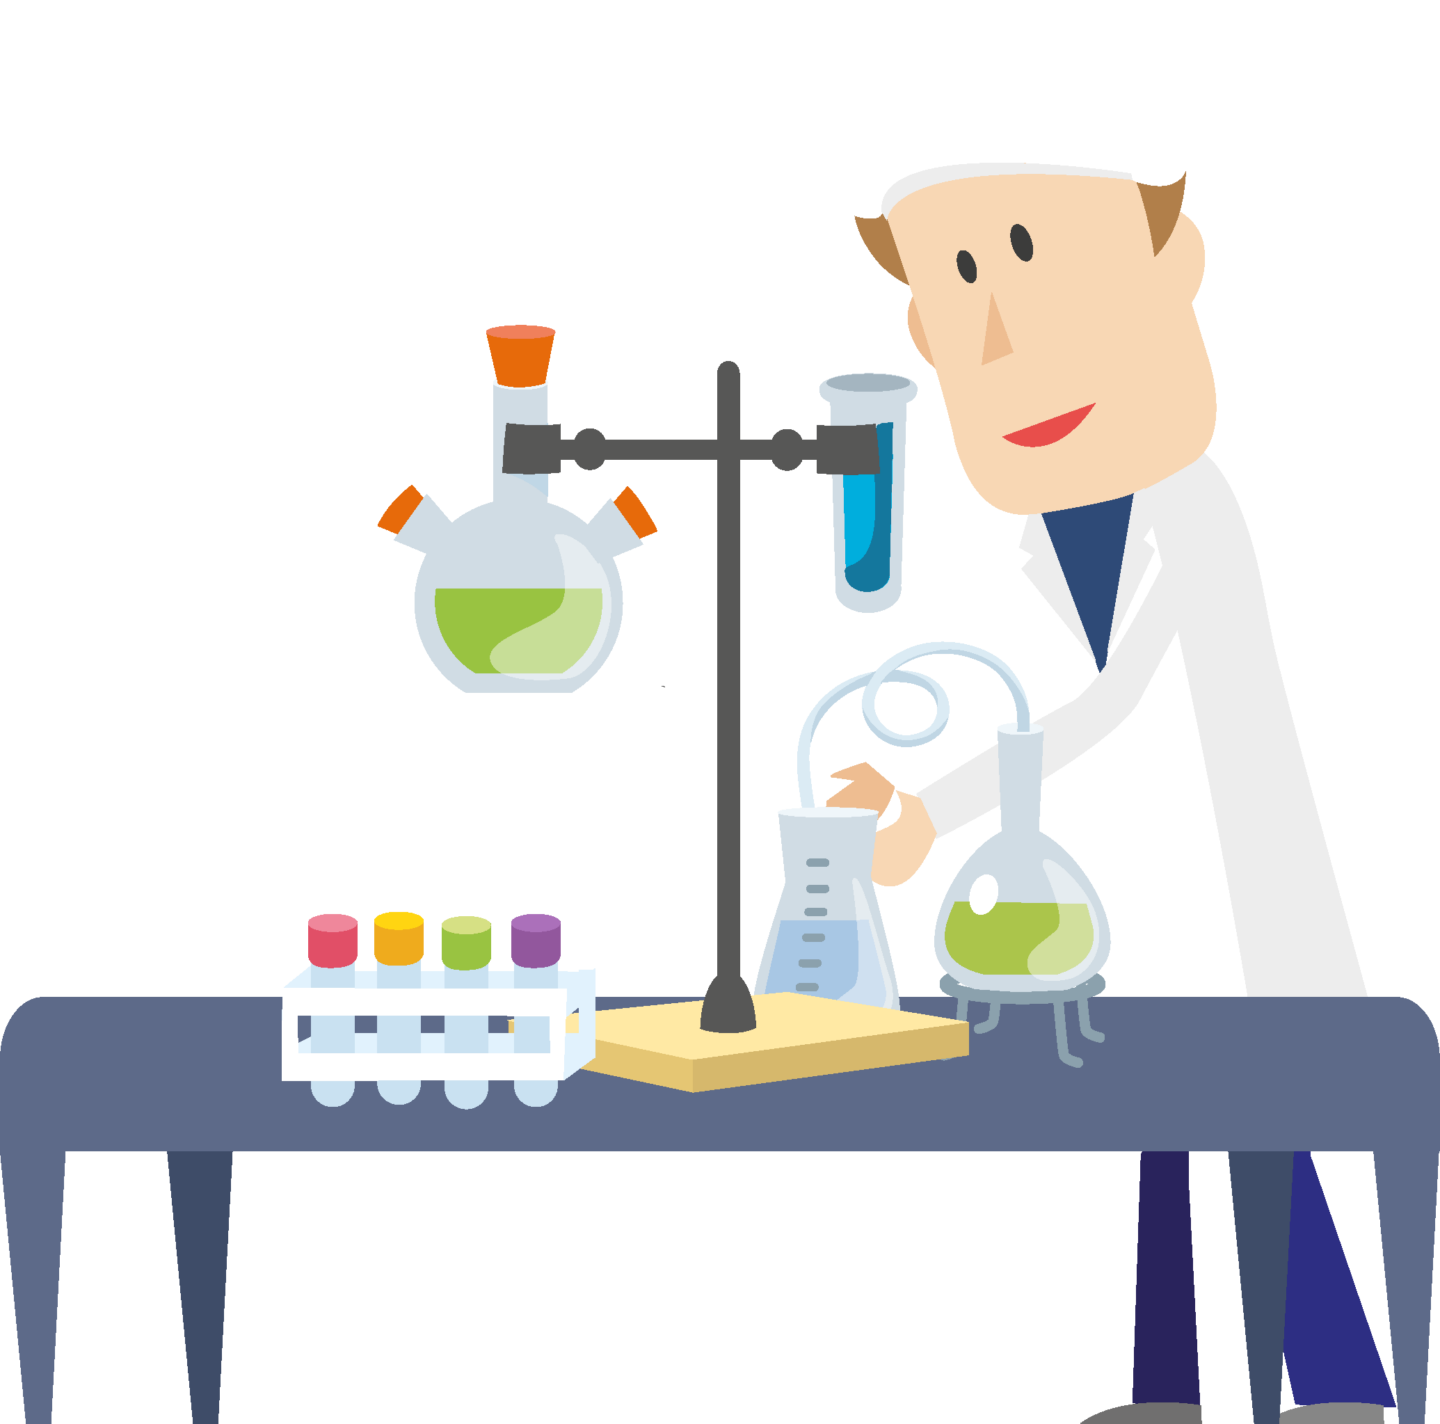 illustration d'un chimiste manipulant des produits qui impliquent des risques biologique, au travail.